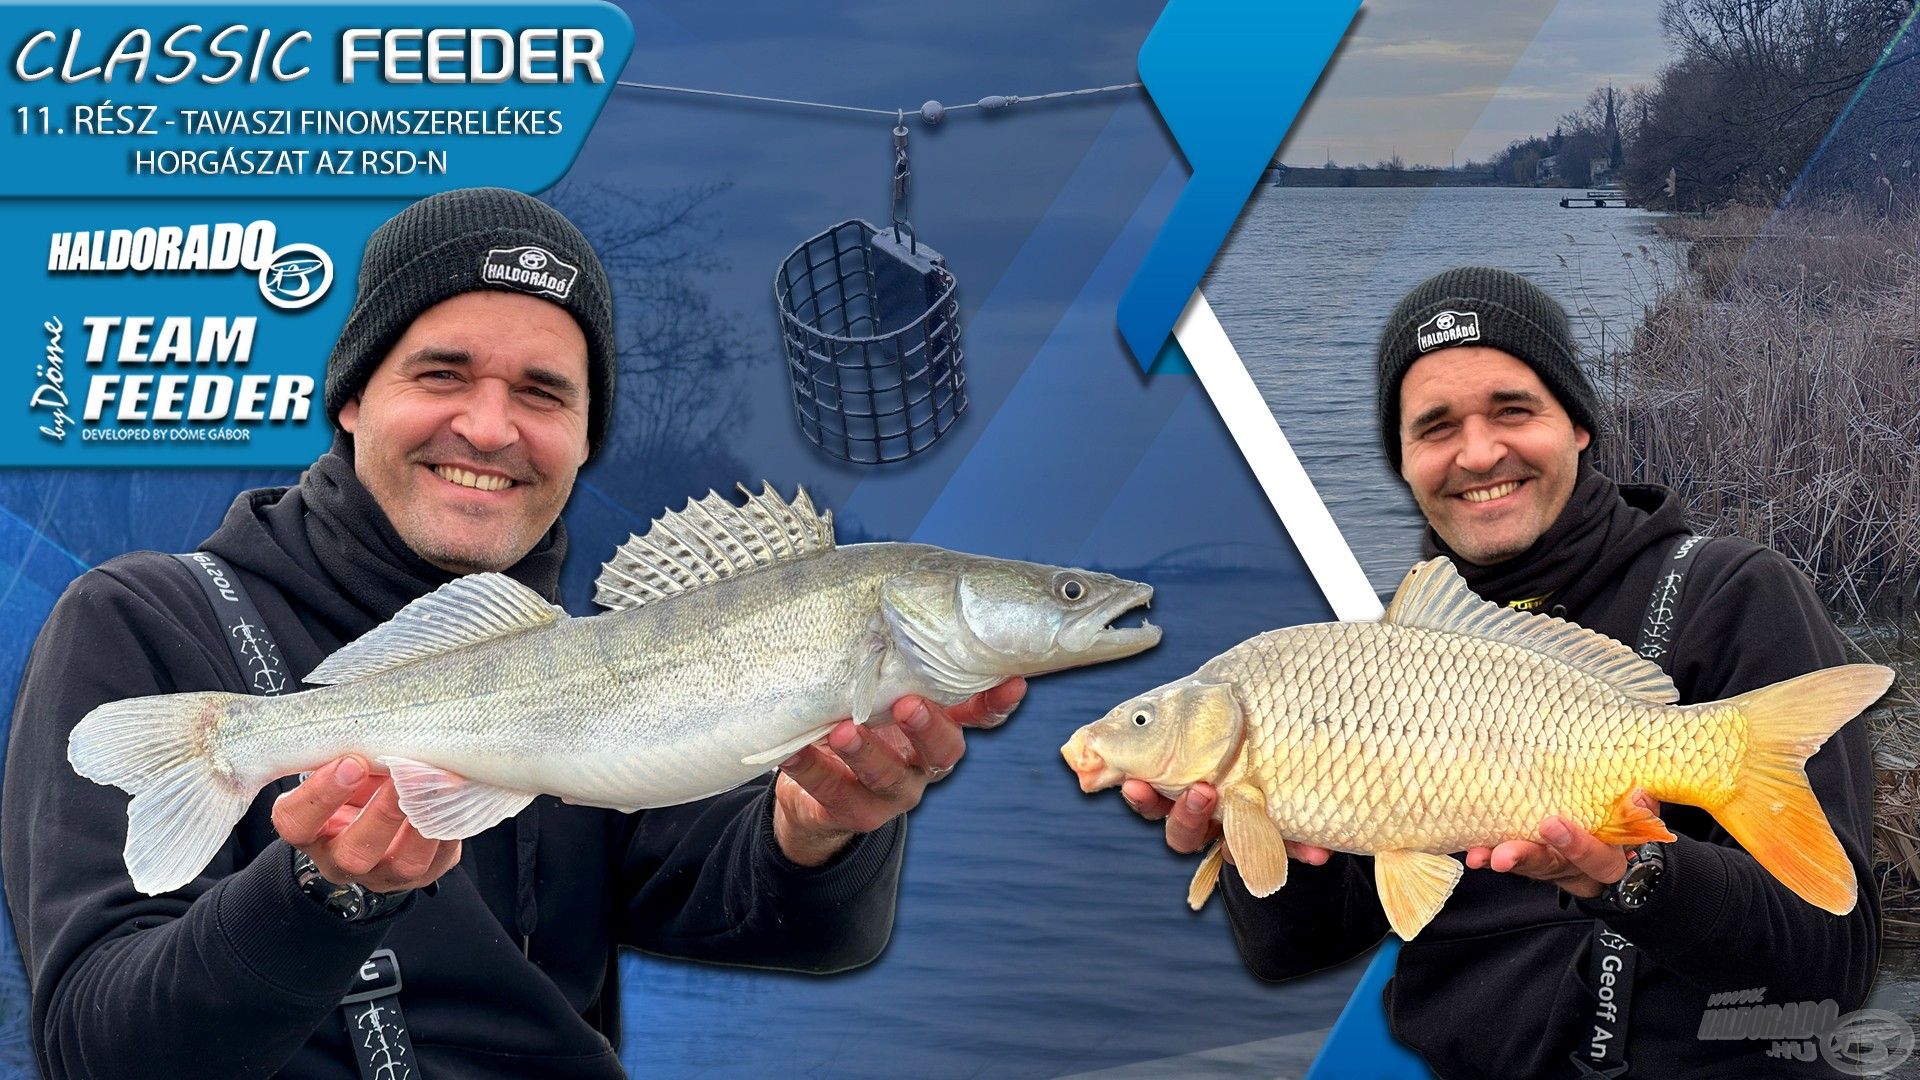 A classic feeder 11. rész – Tavaszi finomszerelékes horgászat az RSD-n